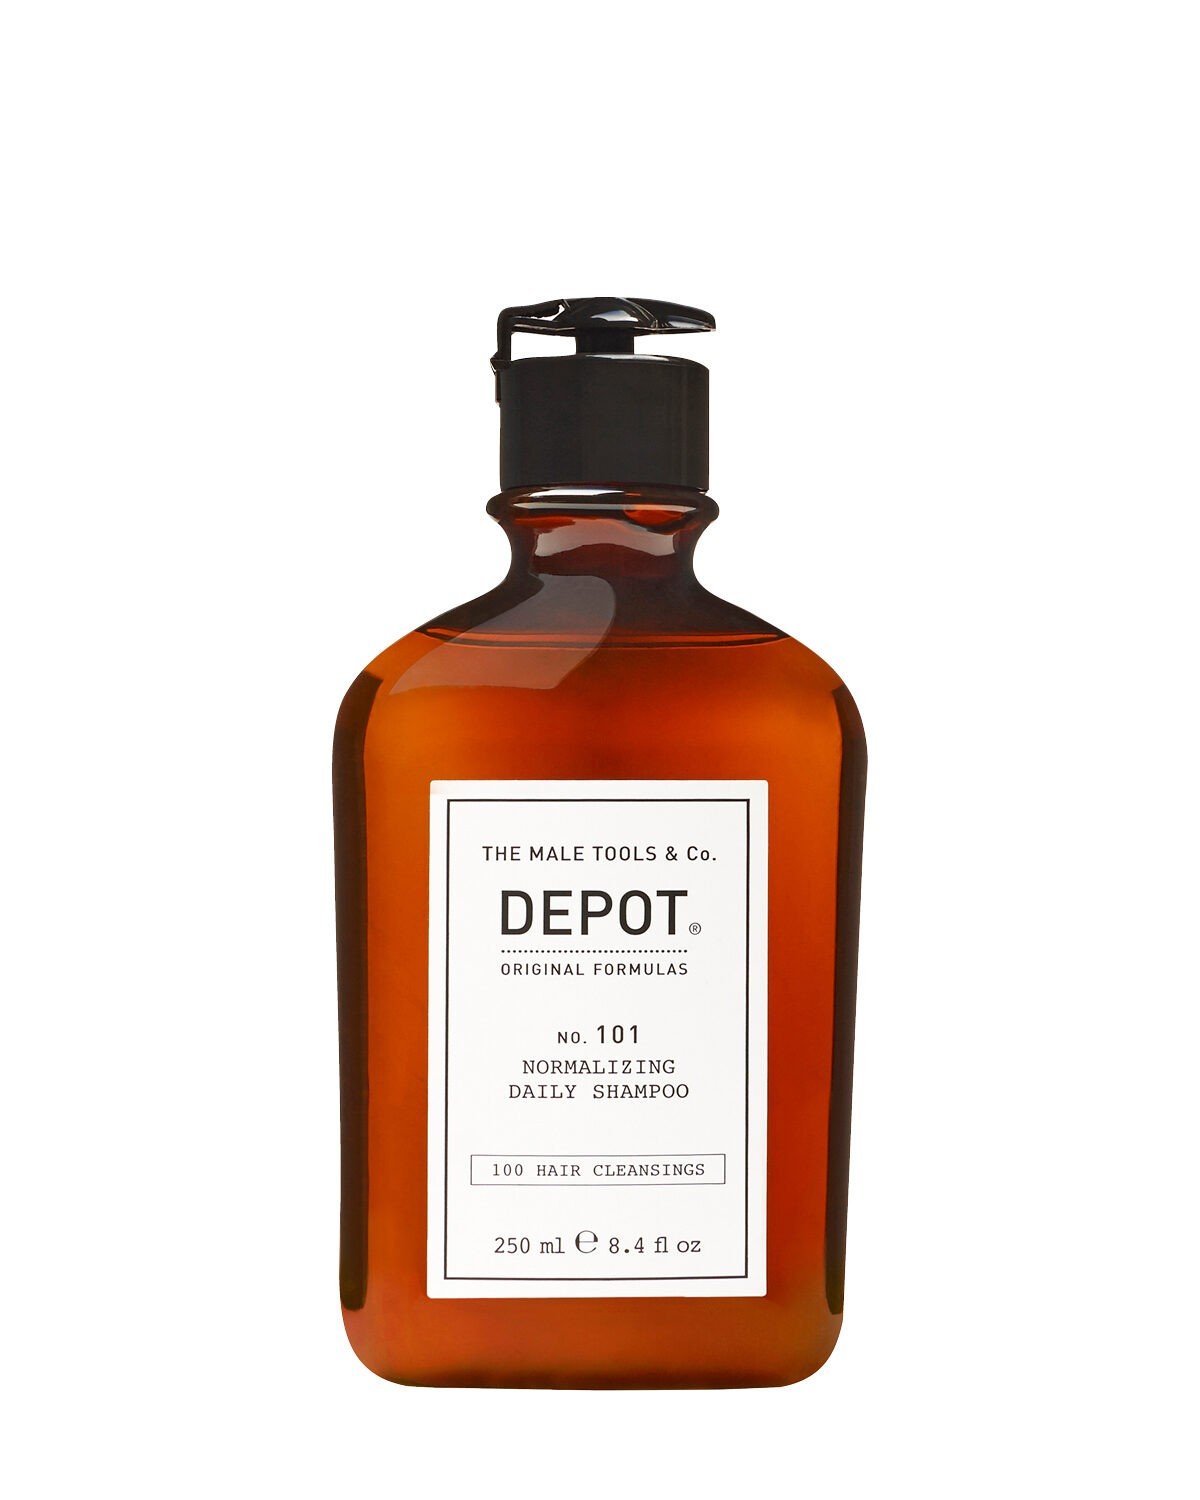 DEPOT 101 Normalizing Shampoo